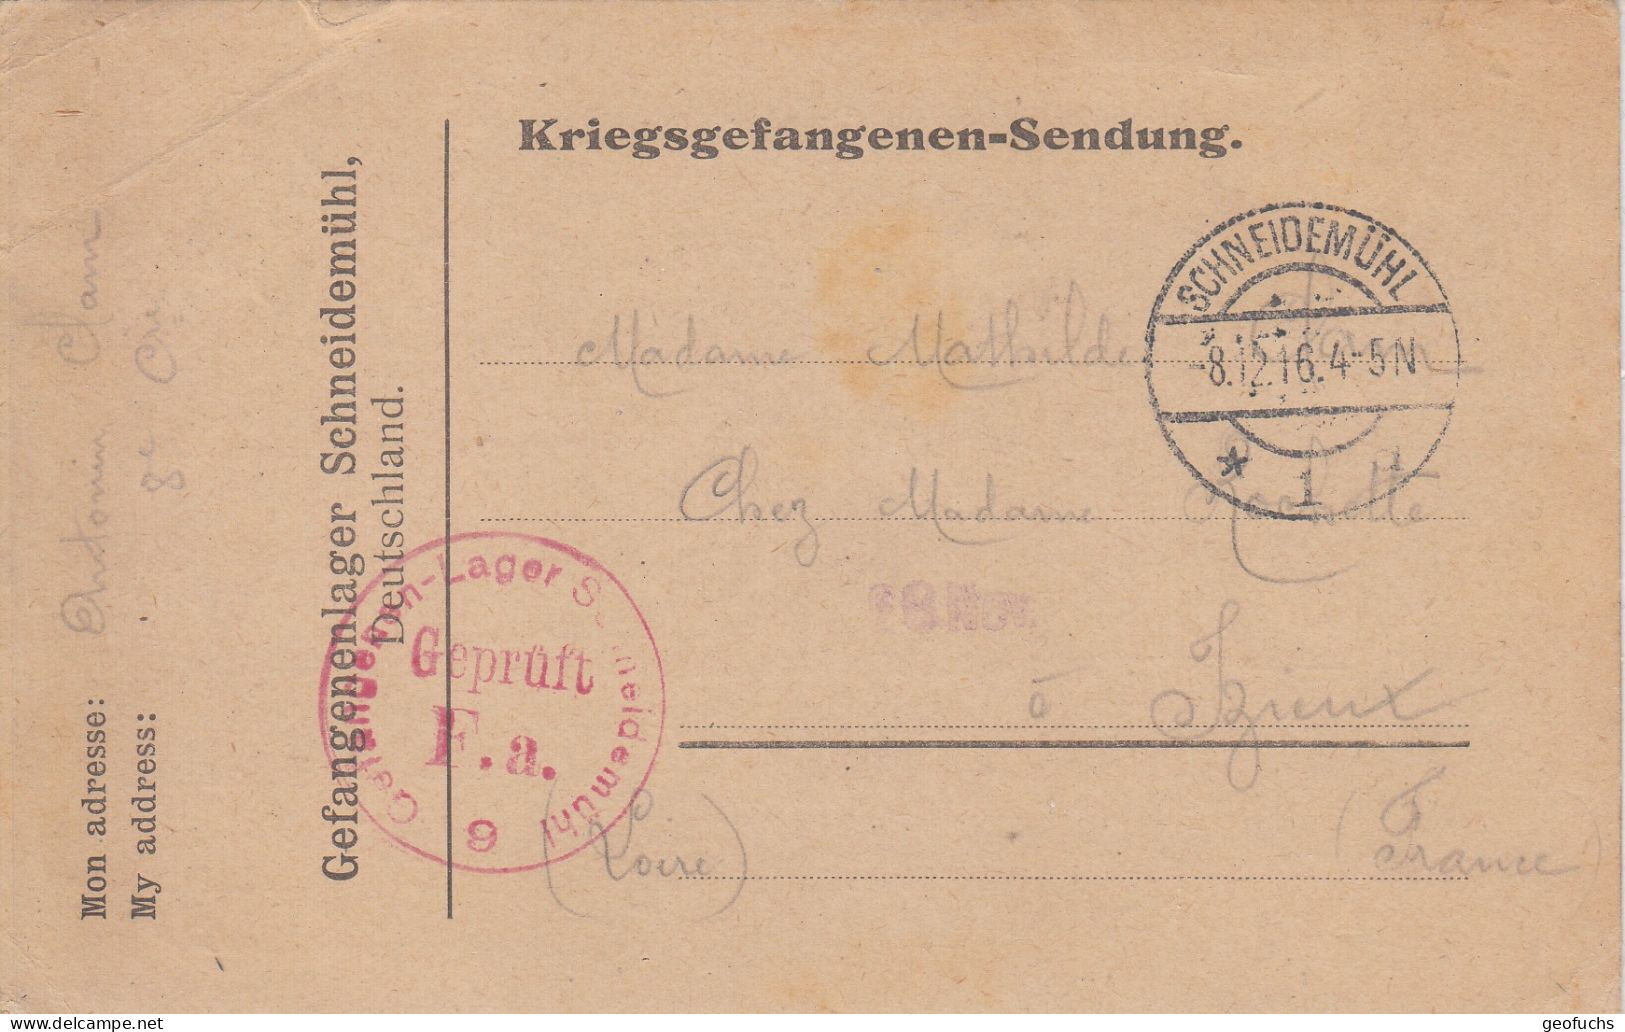 Carte Allemande En Franchise Pour Prisonnier Français, Camp De SCHEIDEMÜHL (Prusse),  écrite 8.12.16, Censurée - 1. Weltkrieg 1914-1918